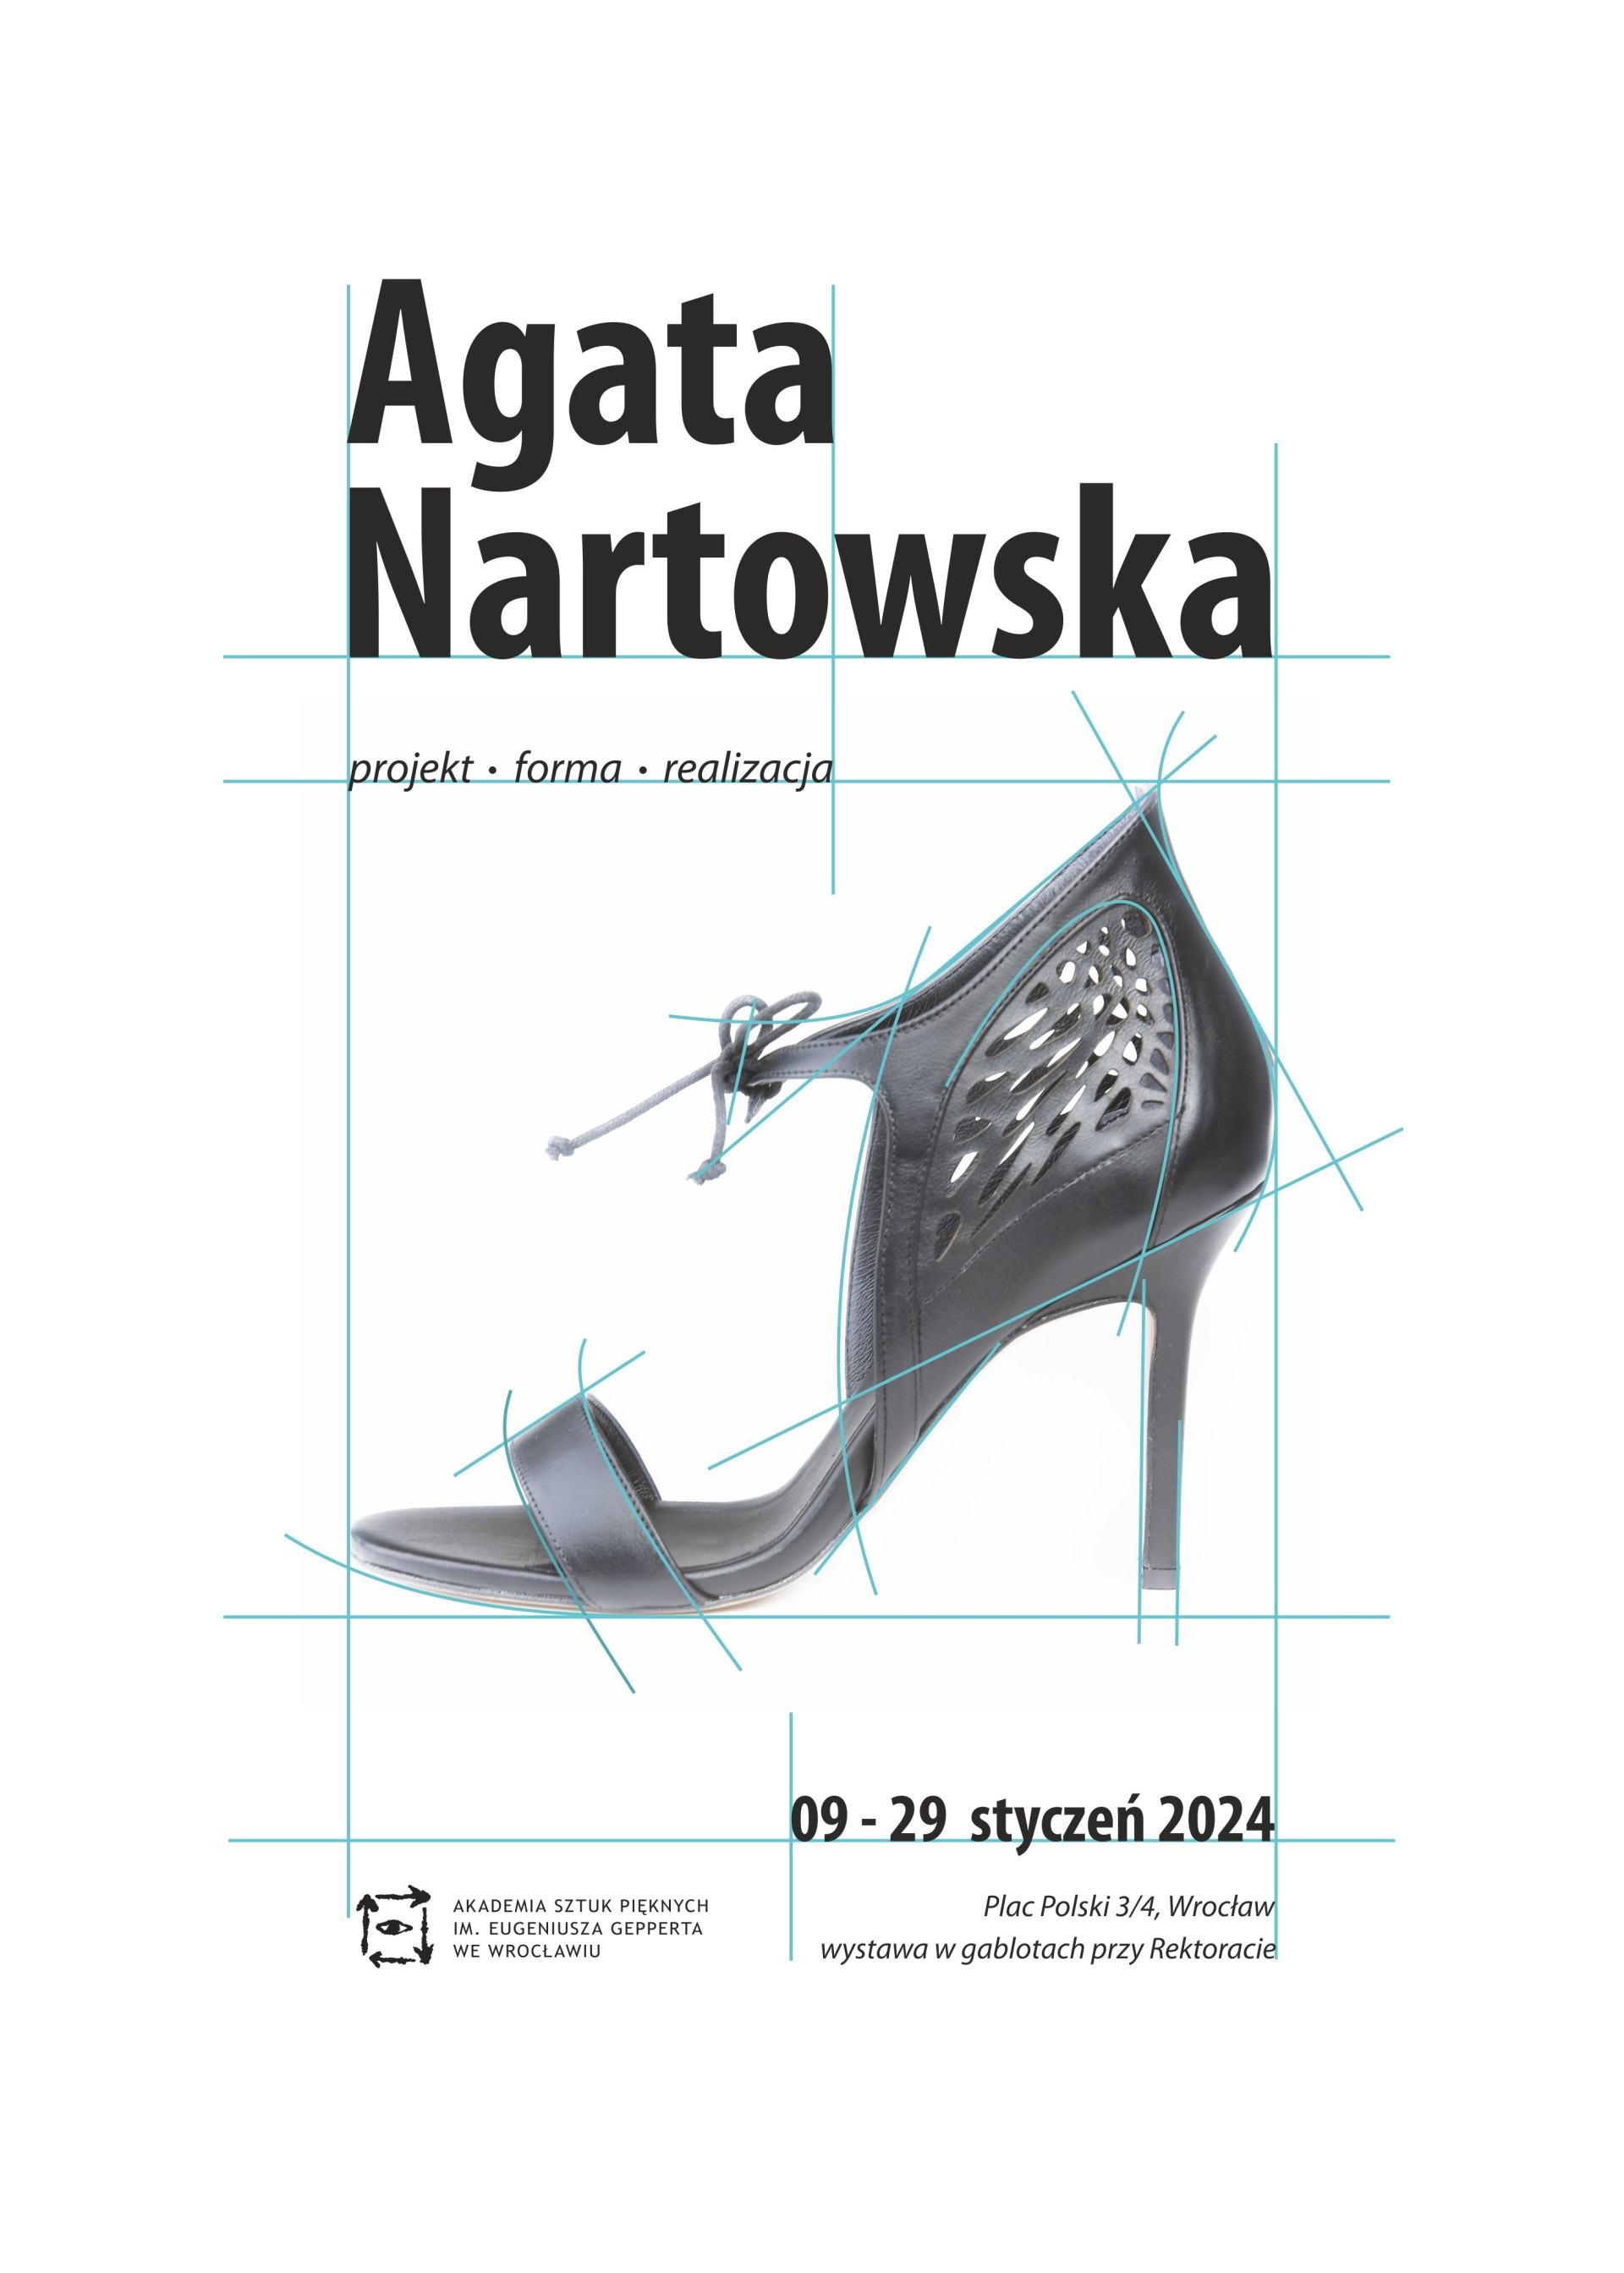 Agata Nartowska